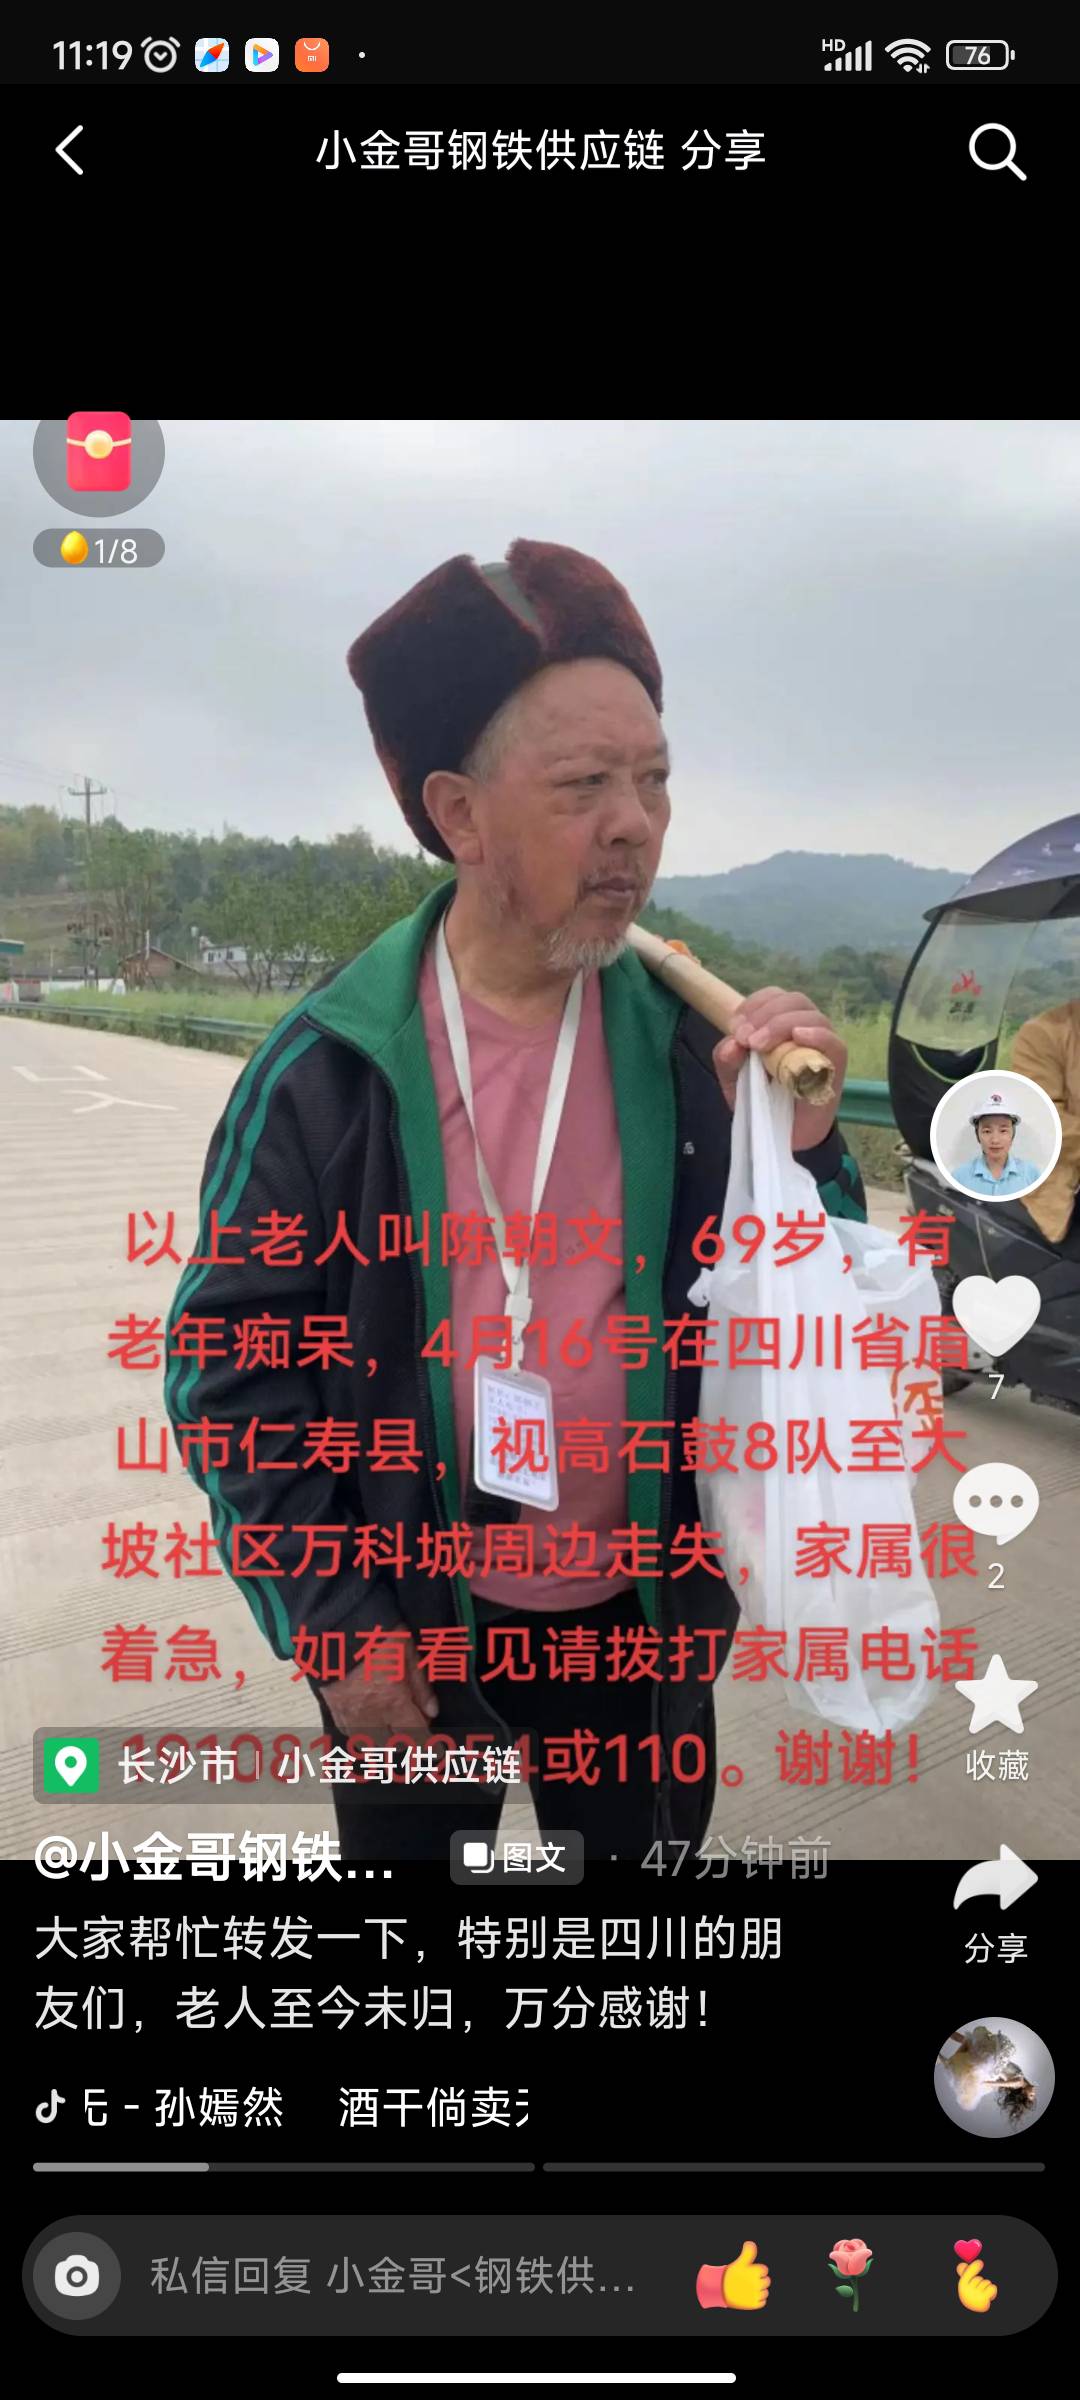 以上老人叫陈朝文，69岁，有老年痴呆，4月16号在 - 陈朝文